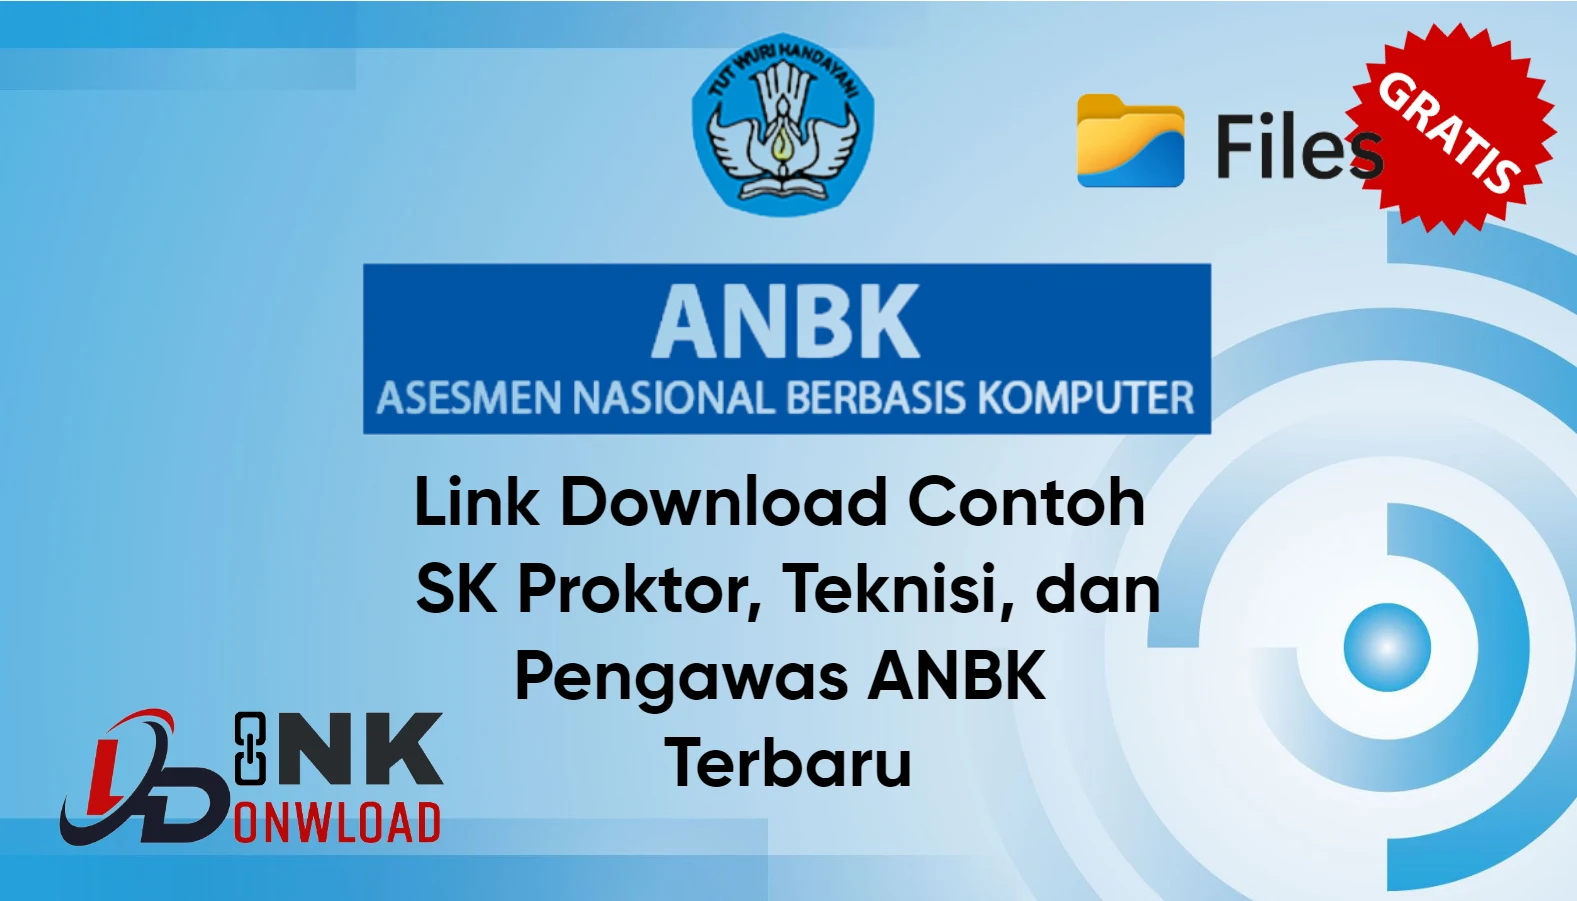 Link Download Contoh SK Proktor, Teknisi, dan Pengawas ANBK Gratis